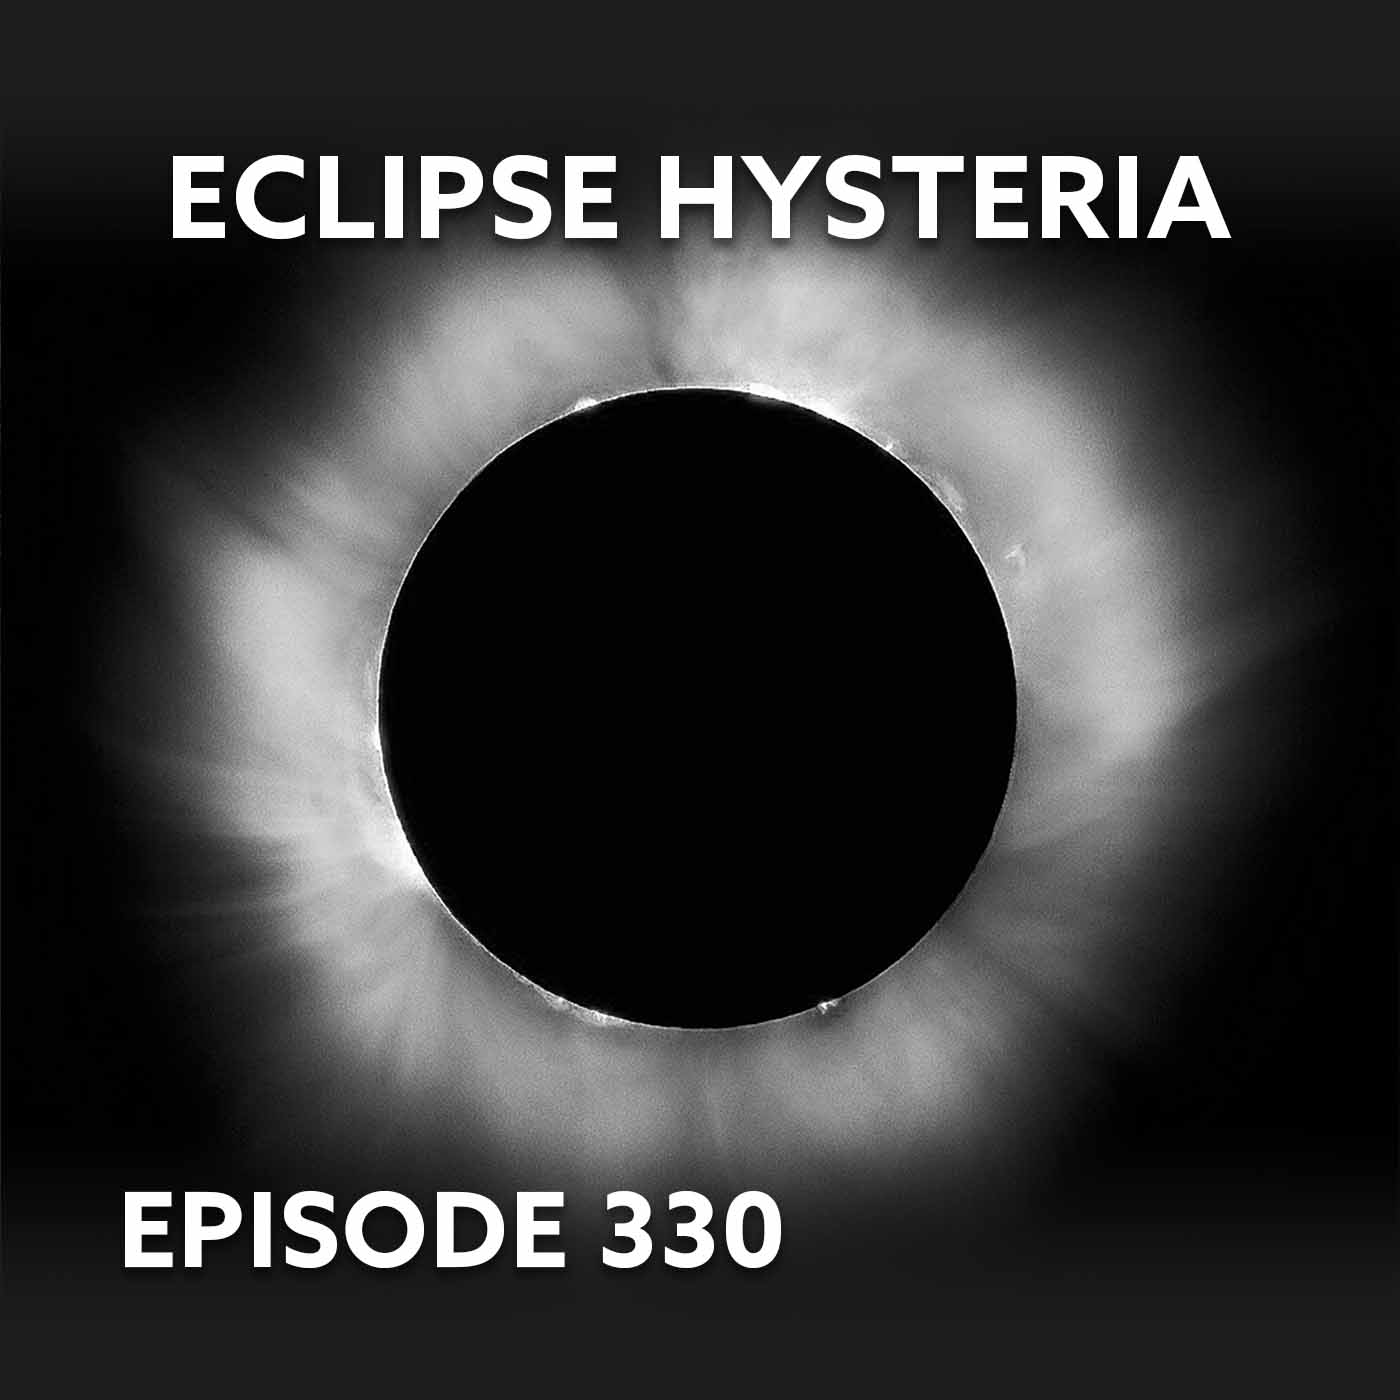 Episode 330 – Eclipse Hysteria